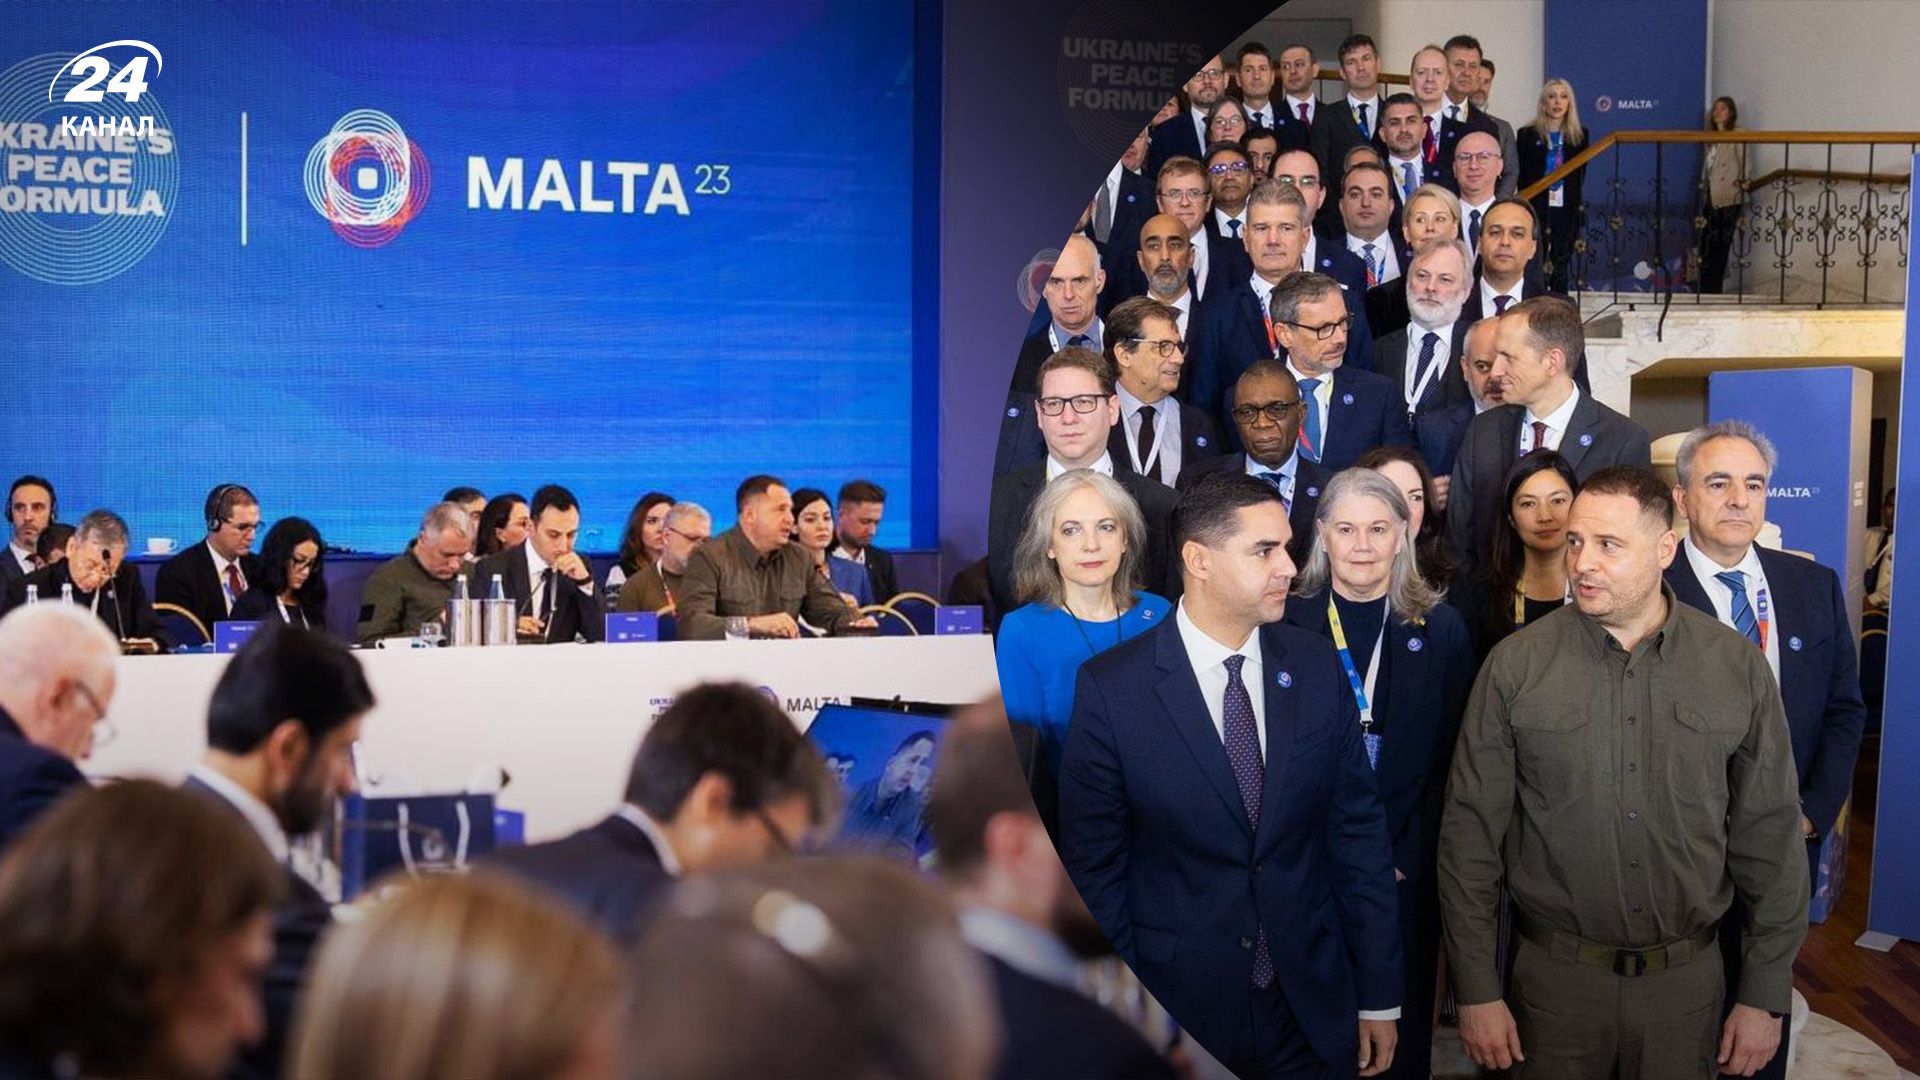 Українська Формула миру - спільна заява України і Мальти за результатами саміту - 24 Канал